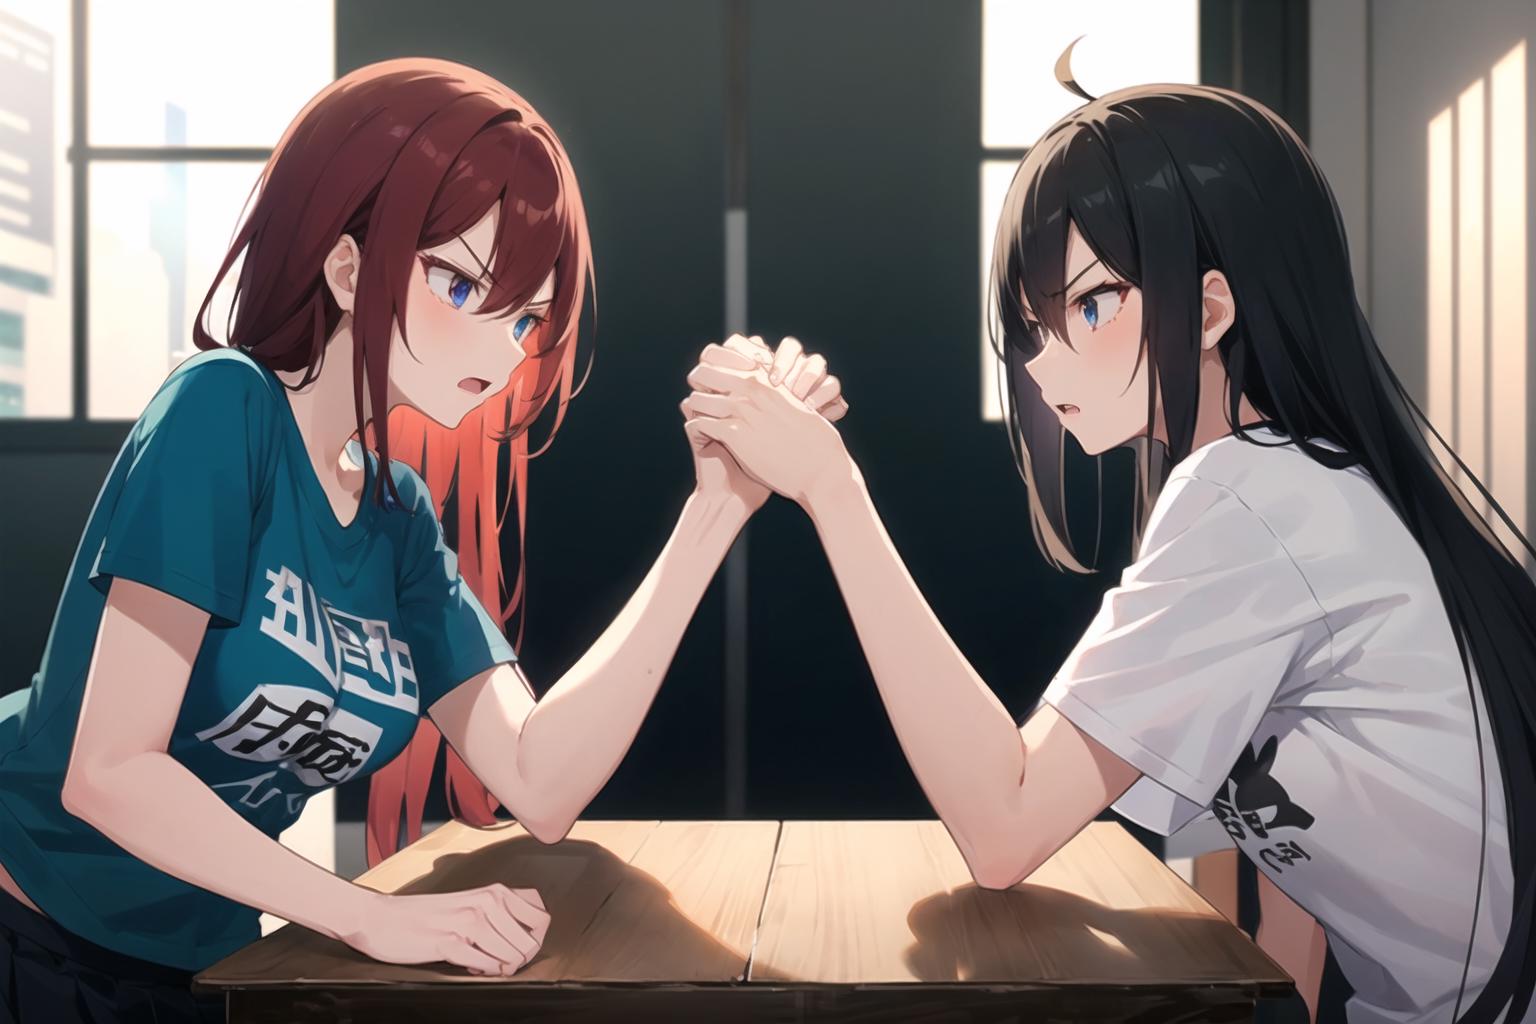 Arm wrestling part 1 | Haikyuu, Anime arms, Haikyuu fanart